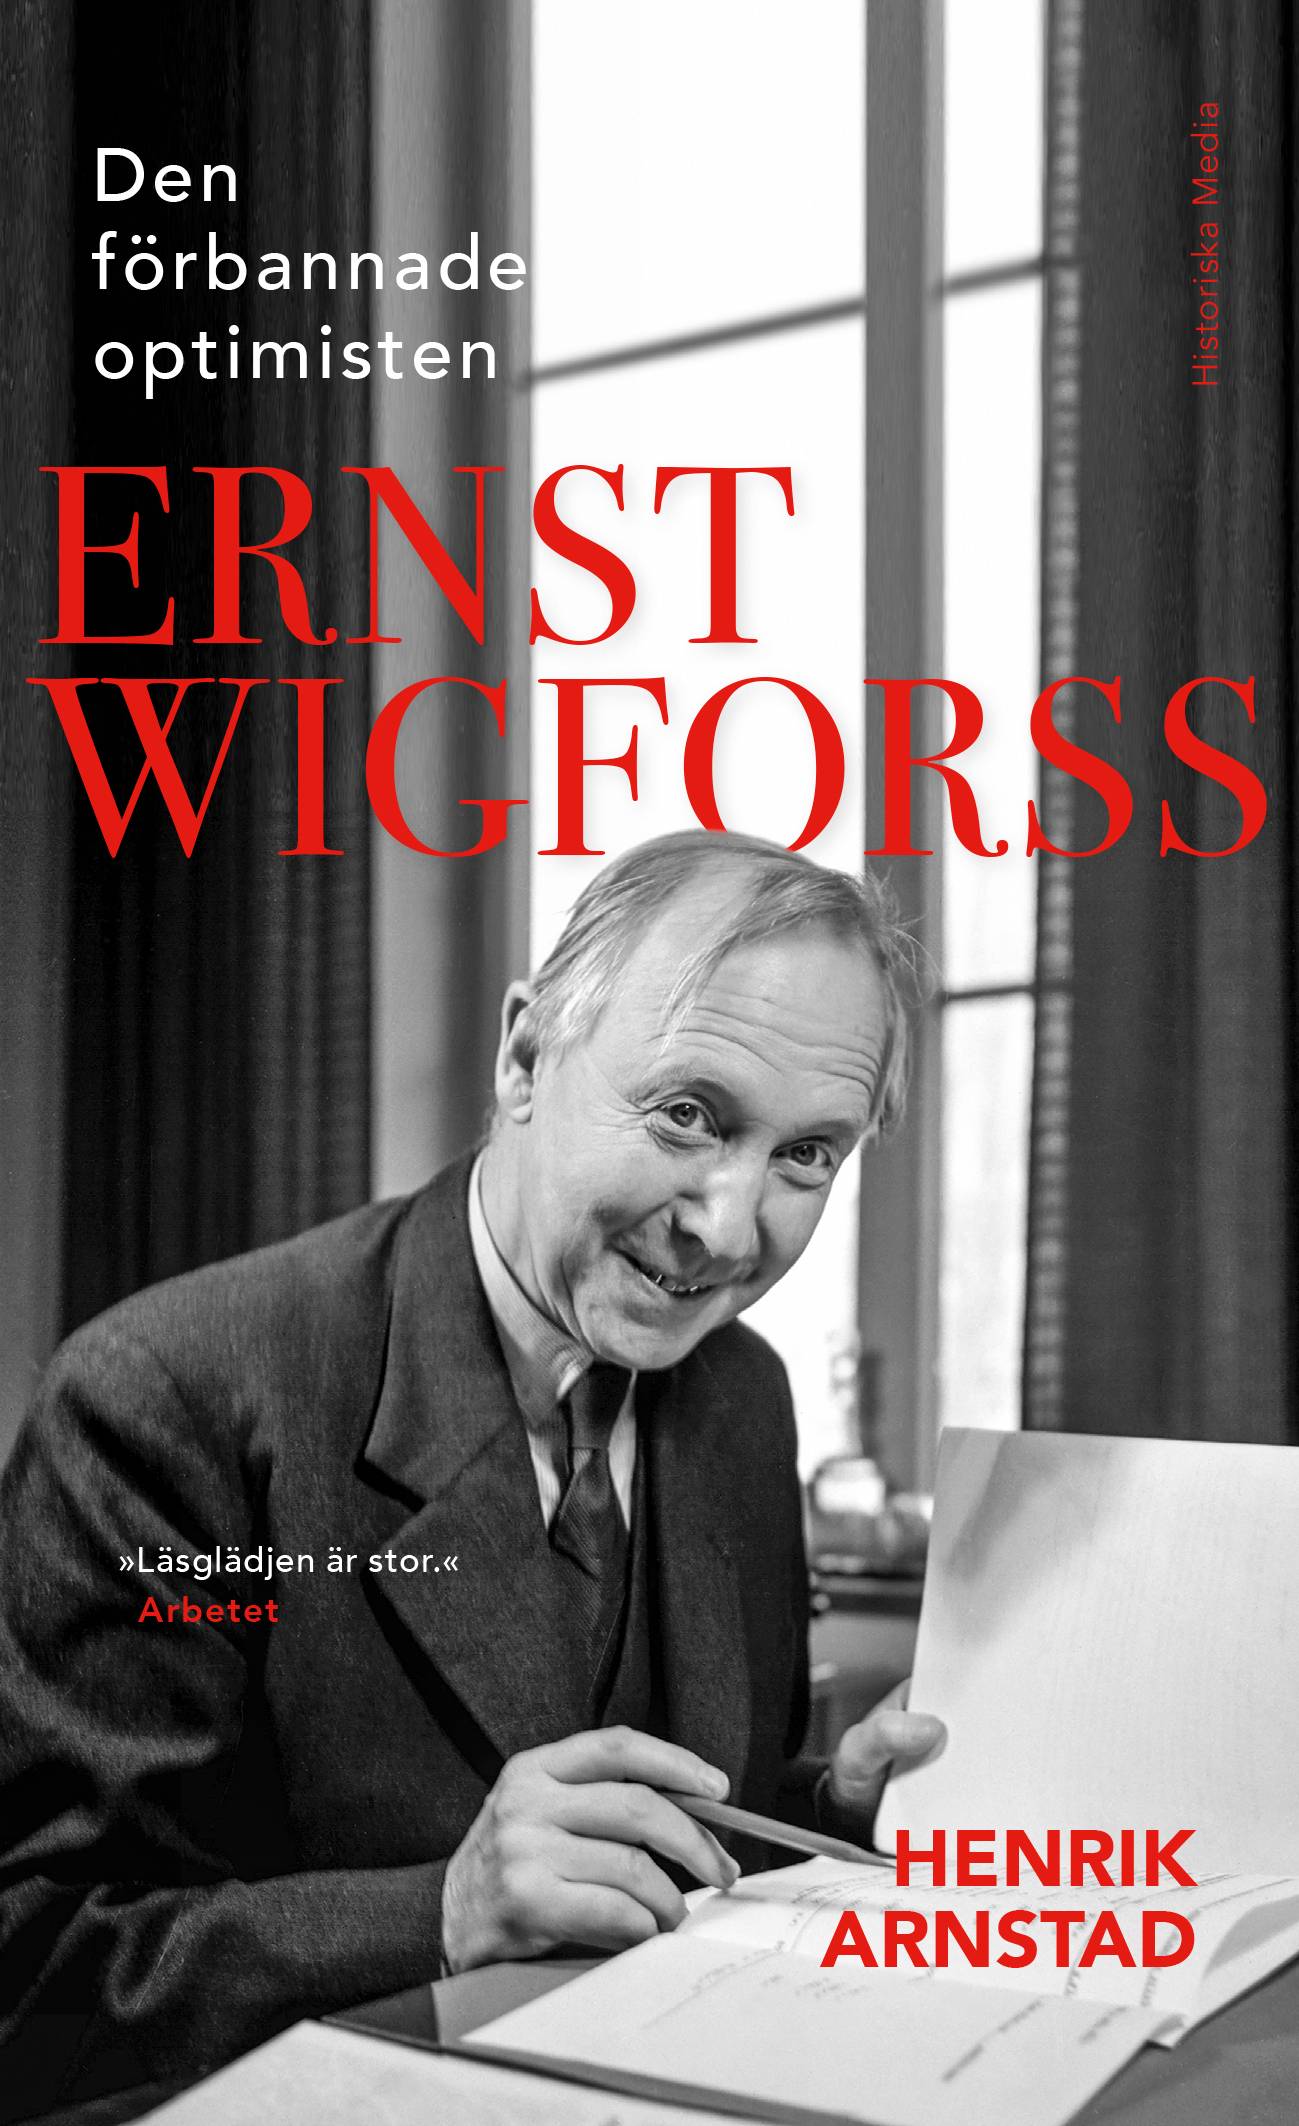 Den förbannade optimisten Ernst Wigforss : socialisten som skapade Sverige